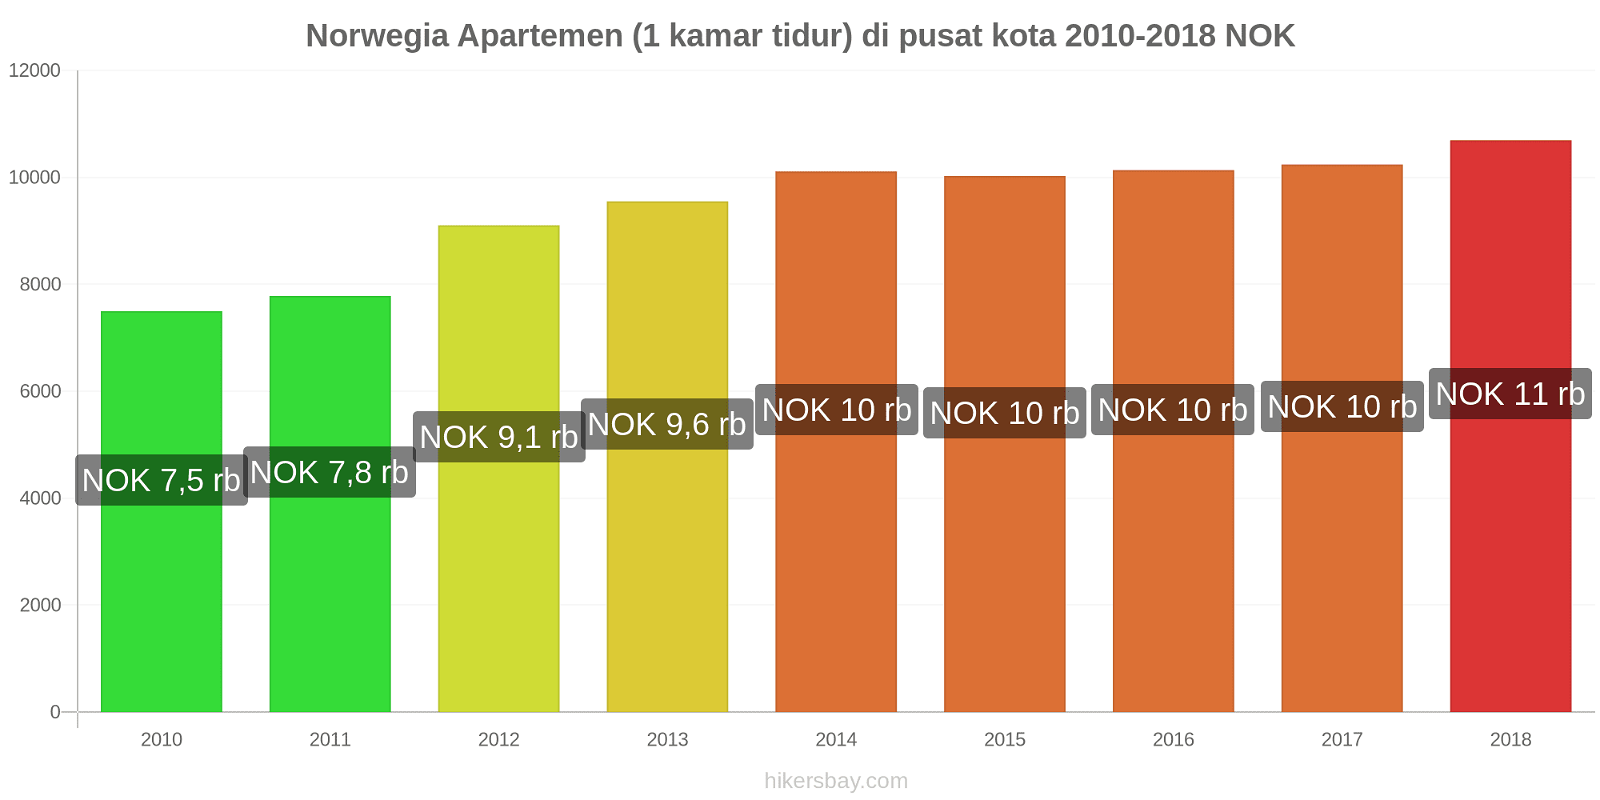 Norwegia perubahan harga Apartemen (1 kamar tidur) di pusat kota hikersbay.com